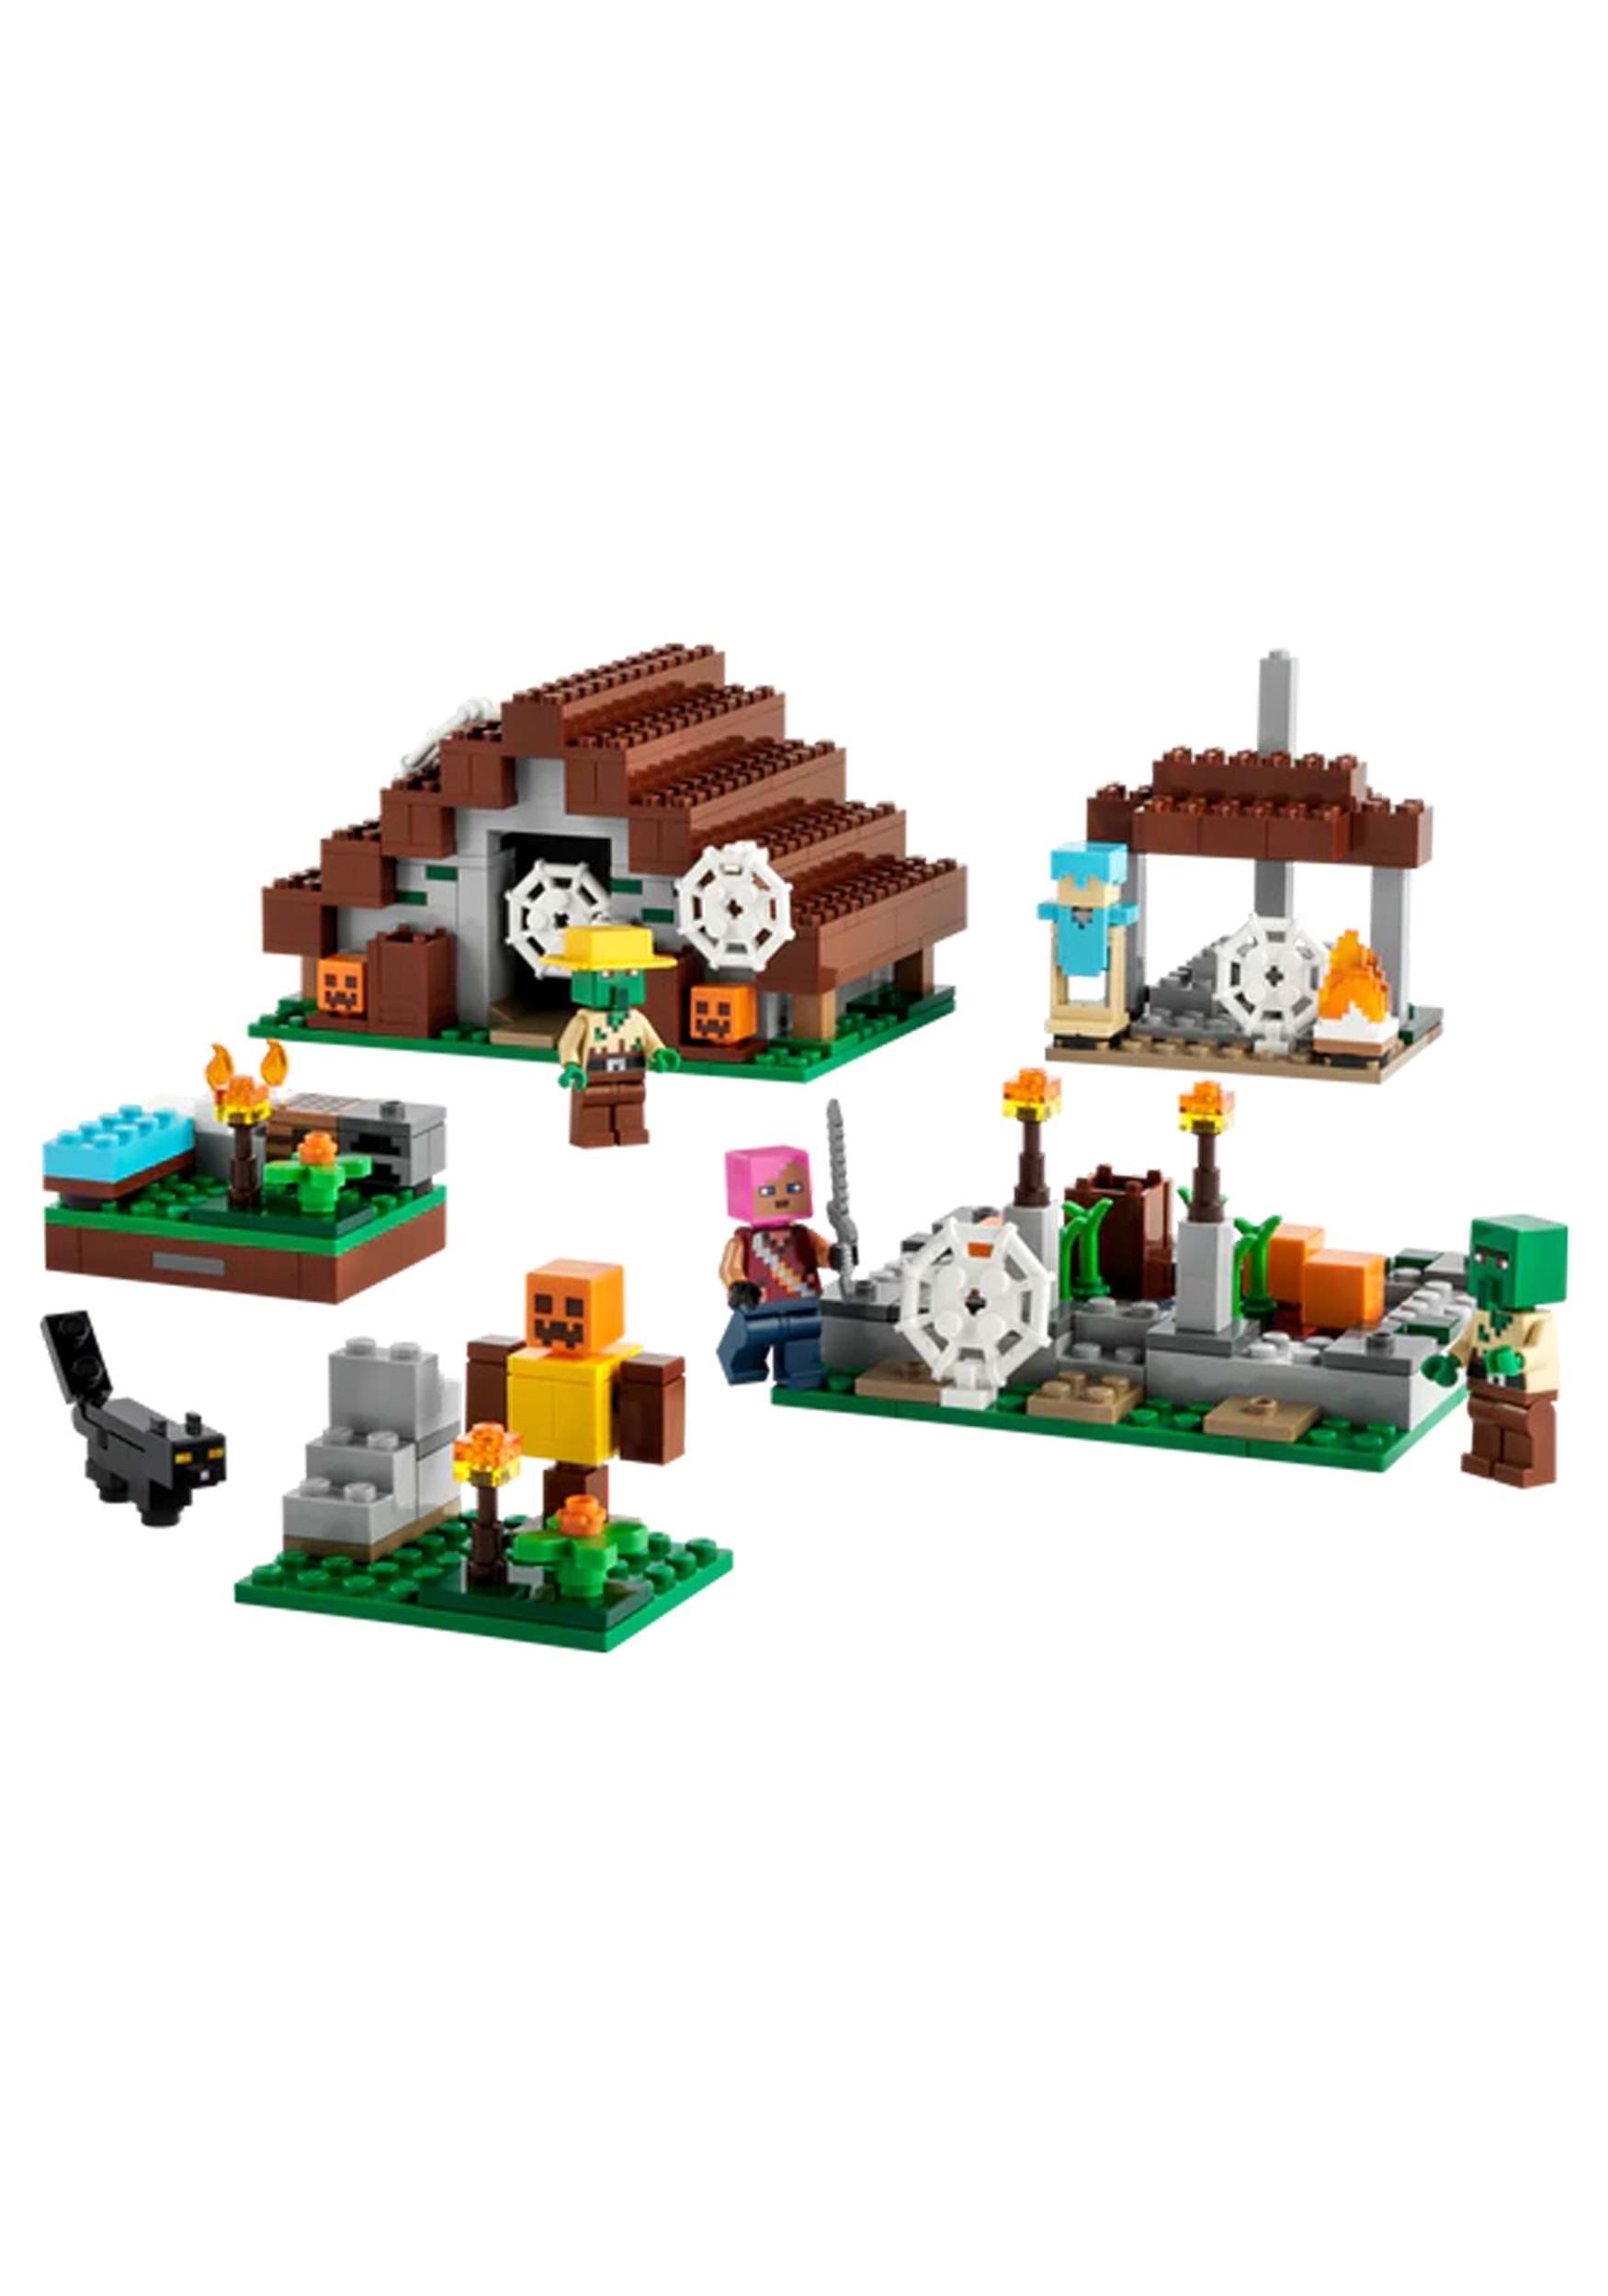 21190 LEGO Minecraft The Abandoned Village | LEGO Toys